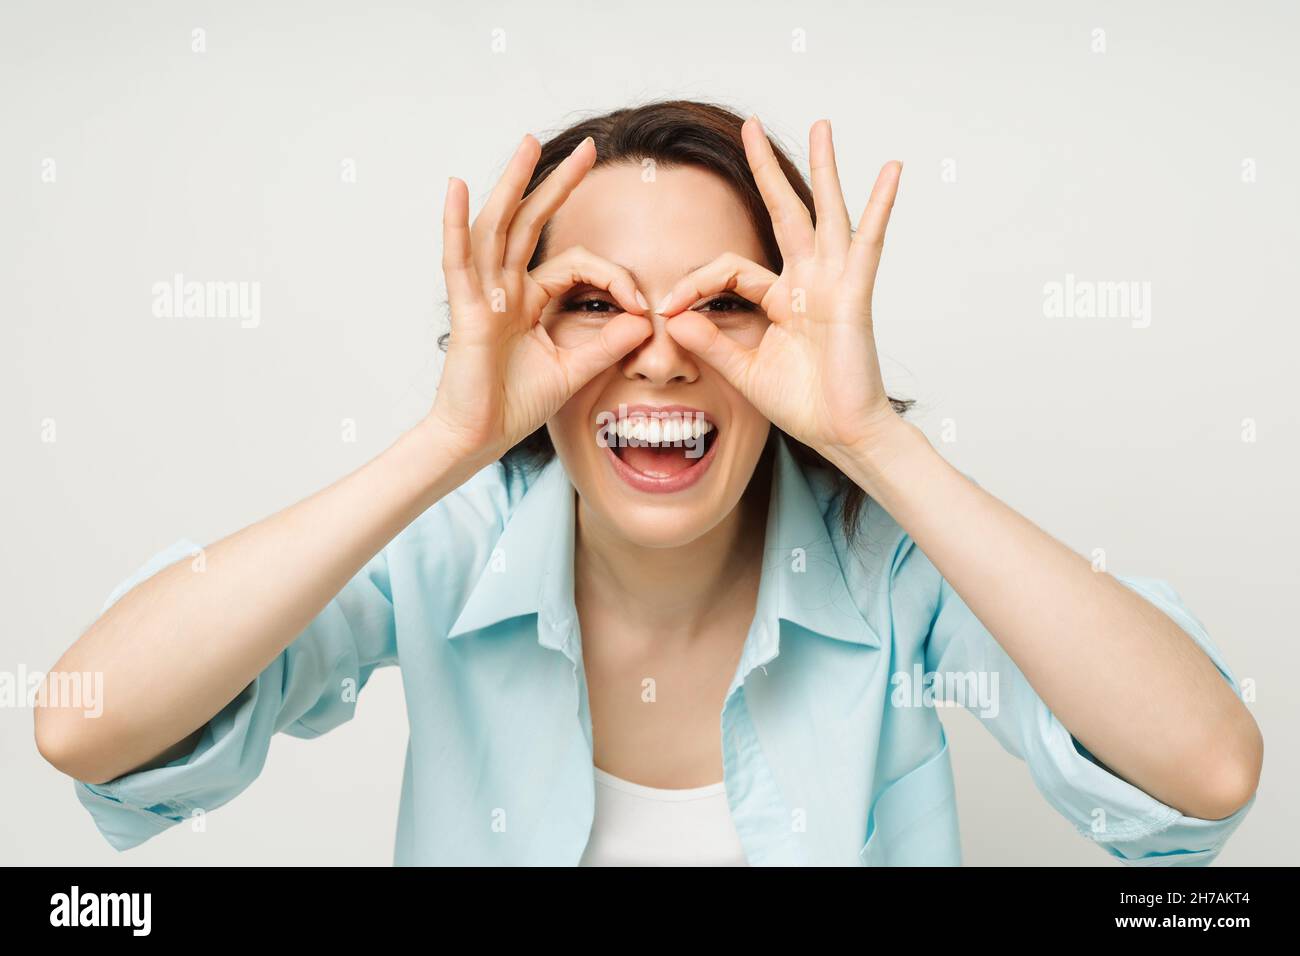 Porträt einer lächelnden Frau, die ein OK-Zeichen zeigt und in eine isolierte Kamera auf weißem Hintergrund blickt. Stockfoto